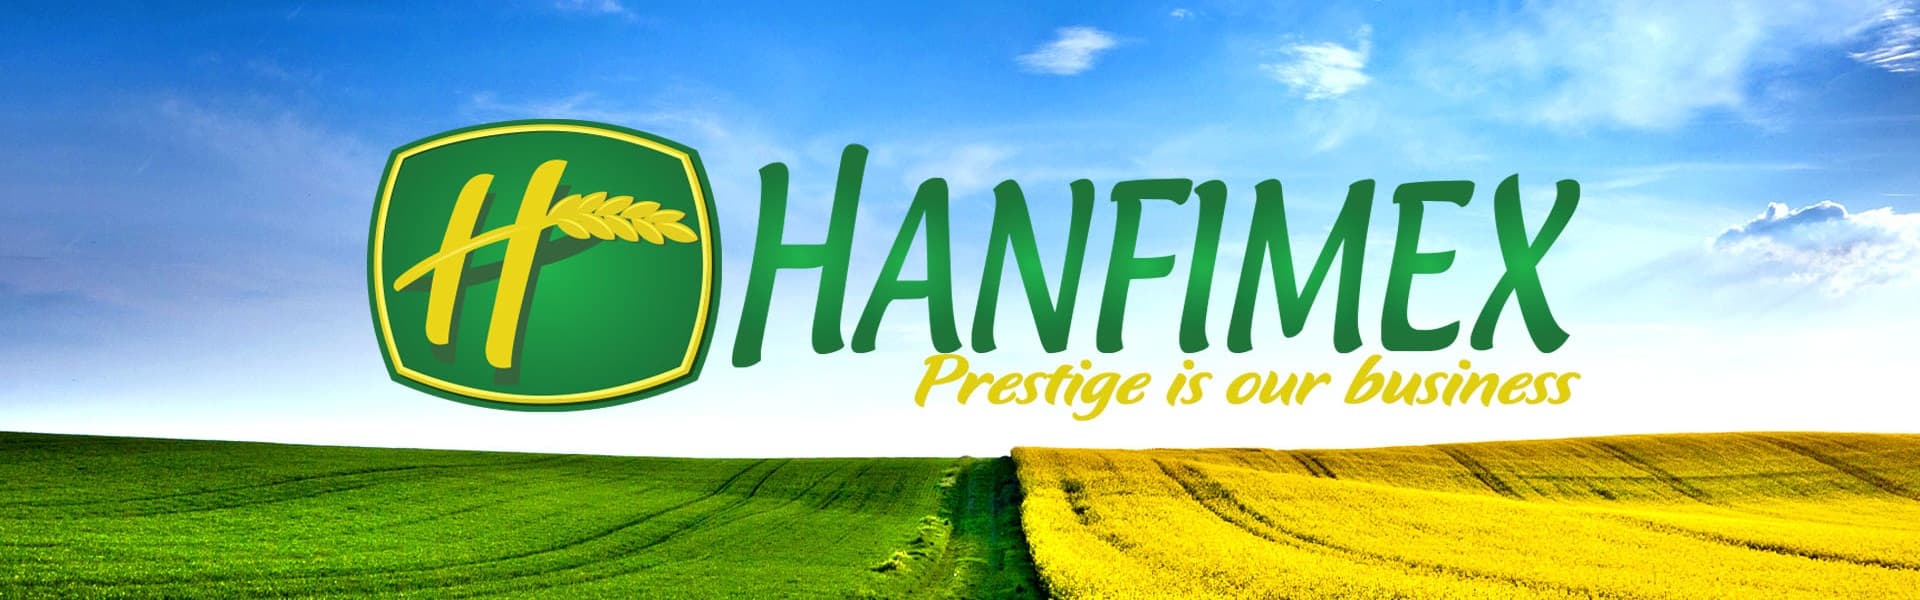 Vietnam Hanfimex Corporation